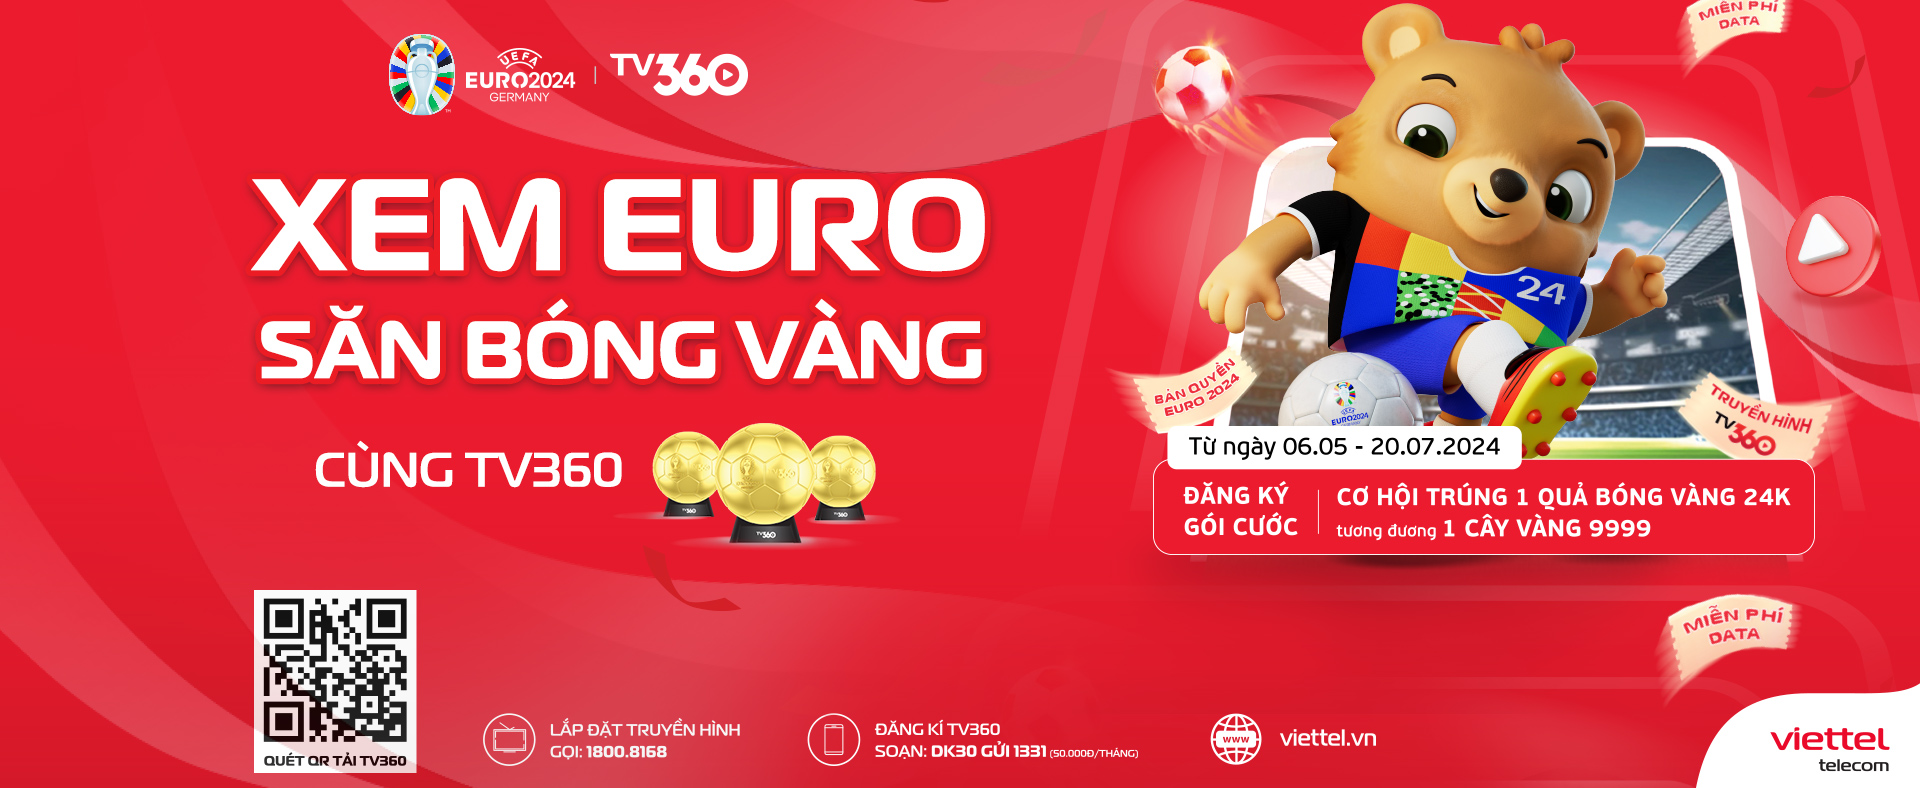 Xem Euro - Săn bóng vàng cùng TV360